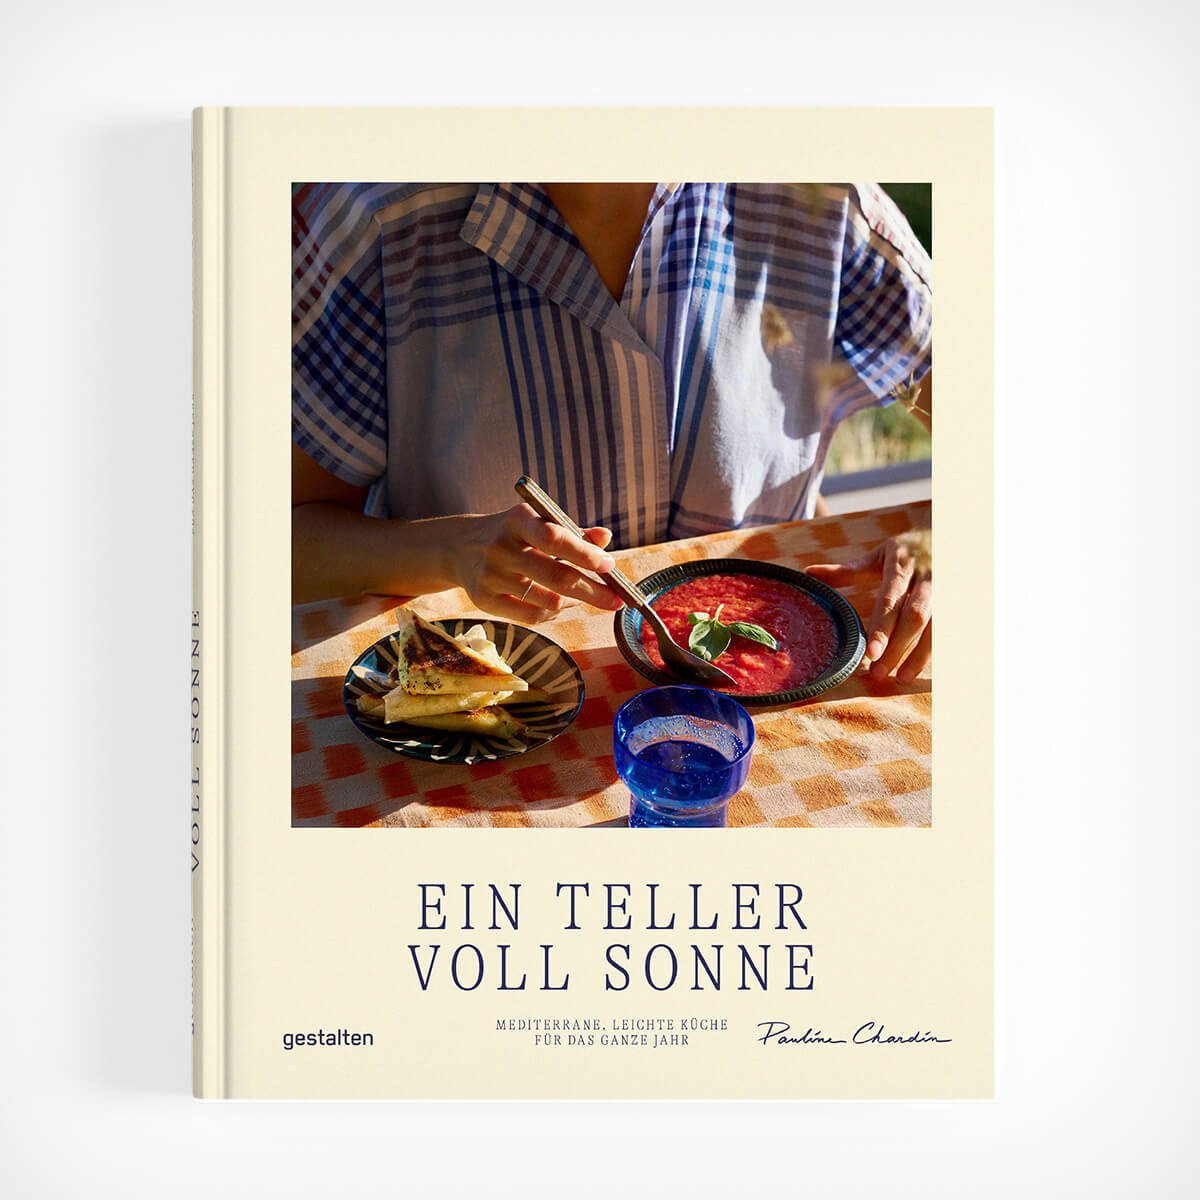 „Ein Teller voll Sonne“ gestalten Pauline Chardin Mediterrane Küche – diesellerie.com